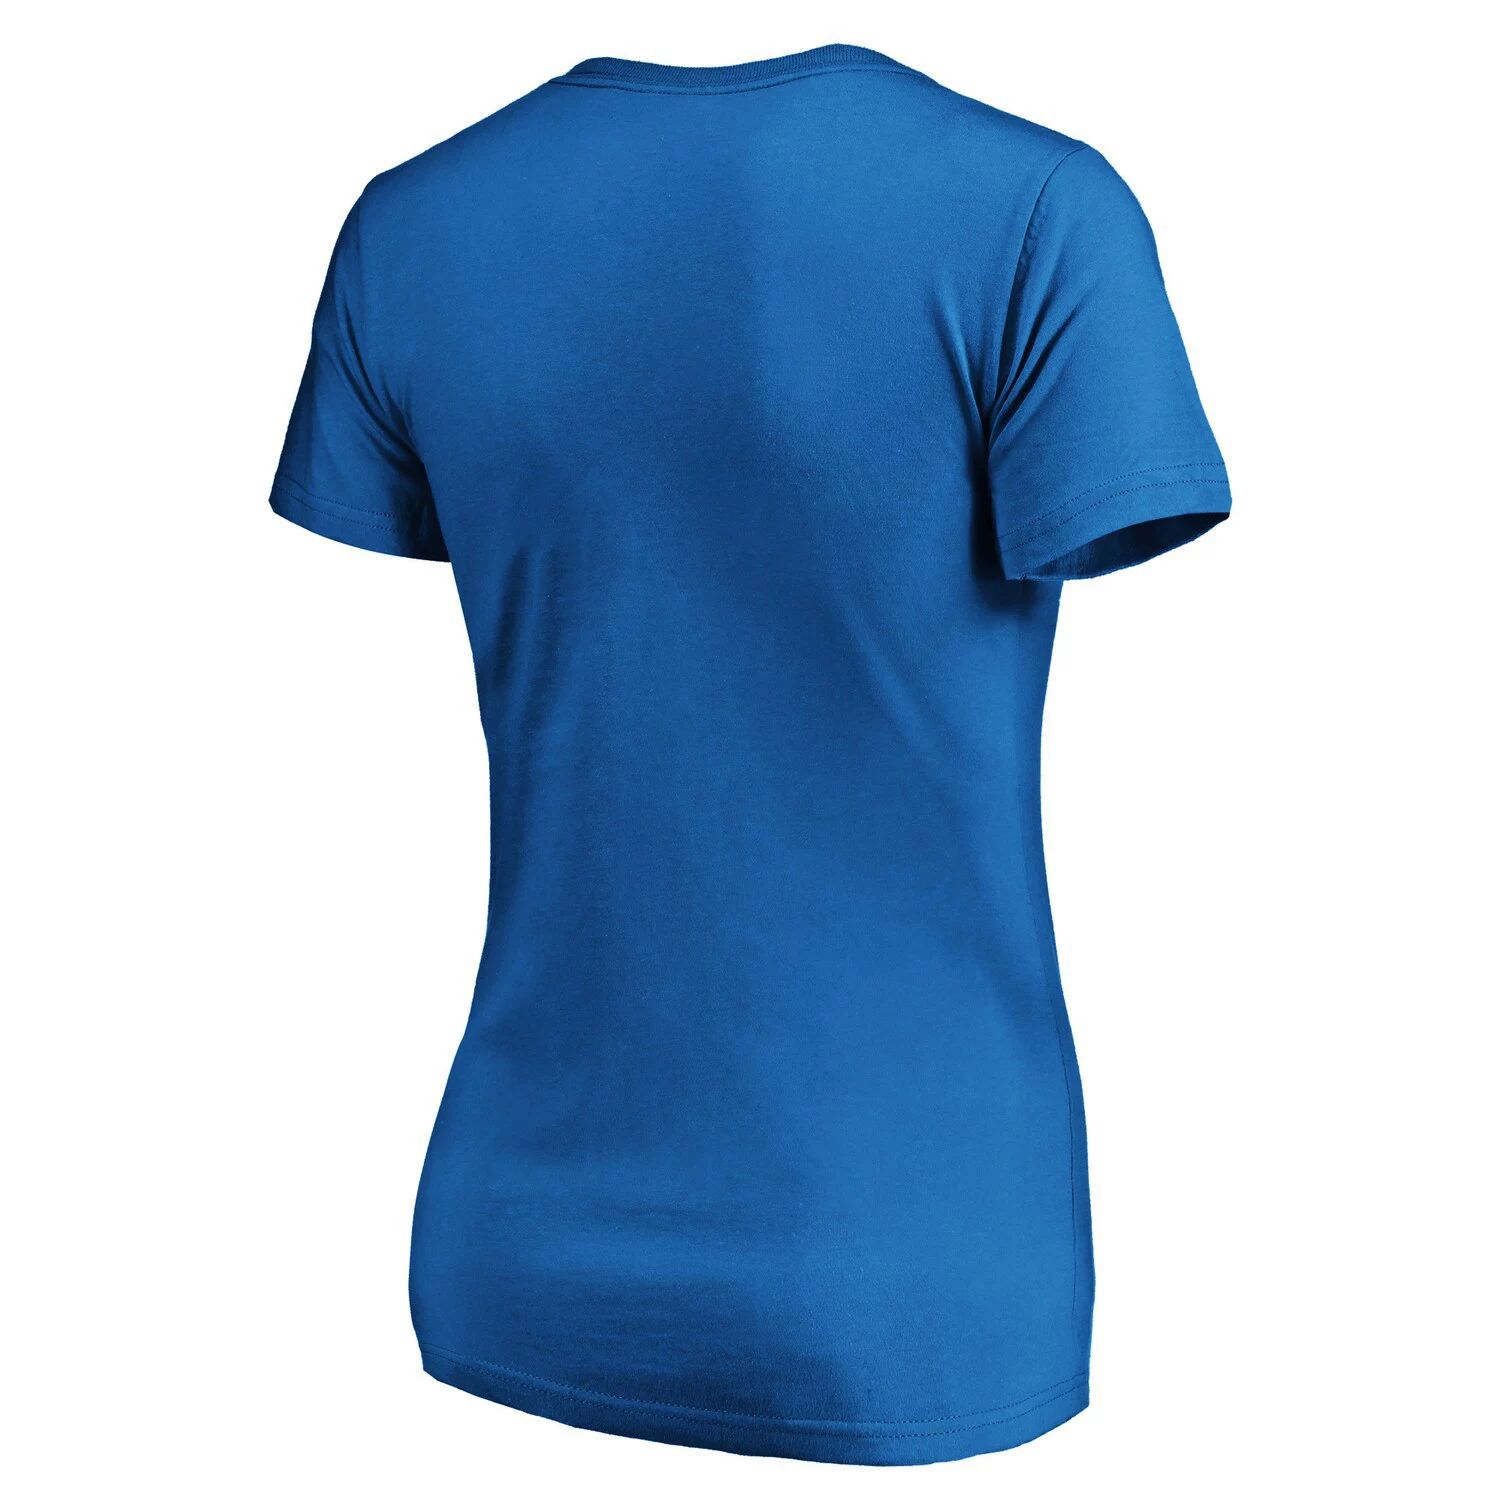 

Синяя женская футболка Fanatics с логотипом команды Оклахома-Сити Тандер и v-образным вырезом Fanatics, Синий